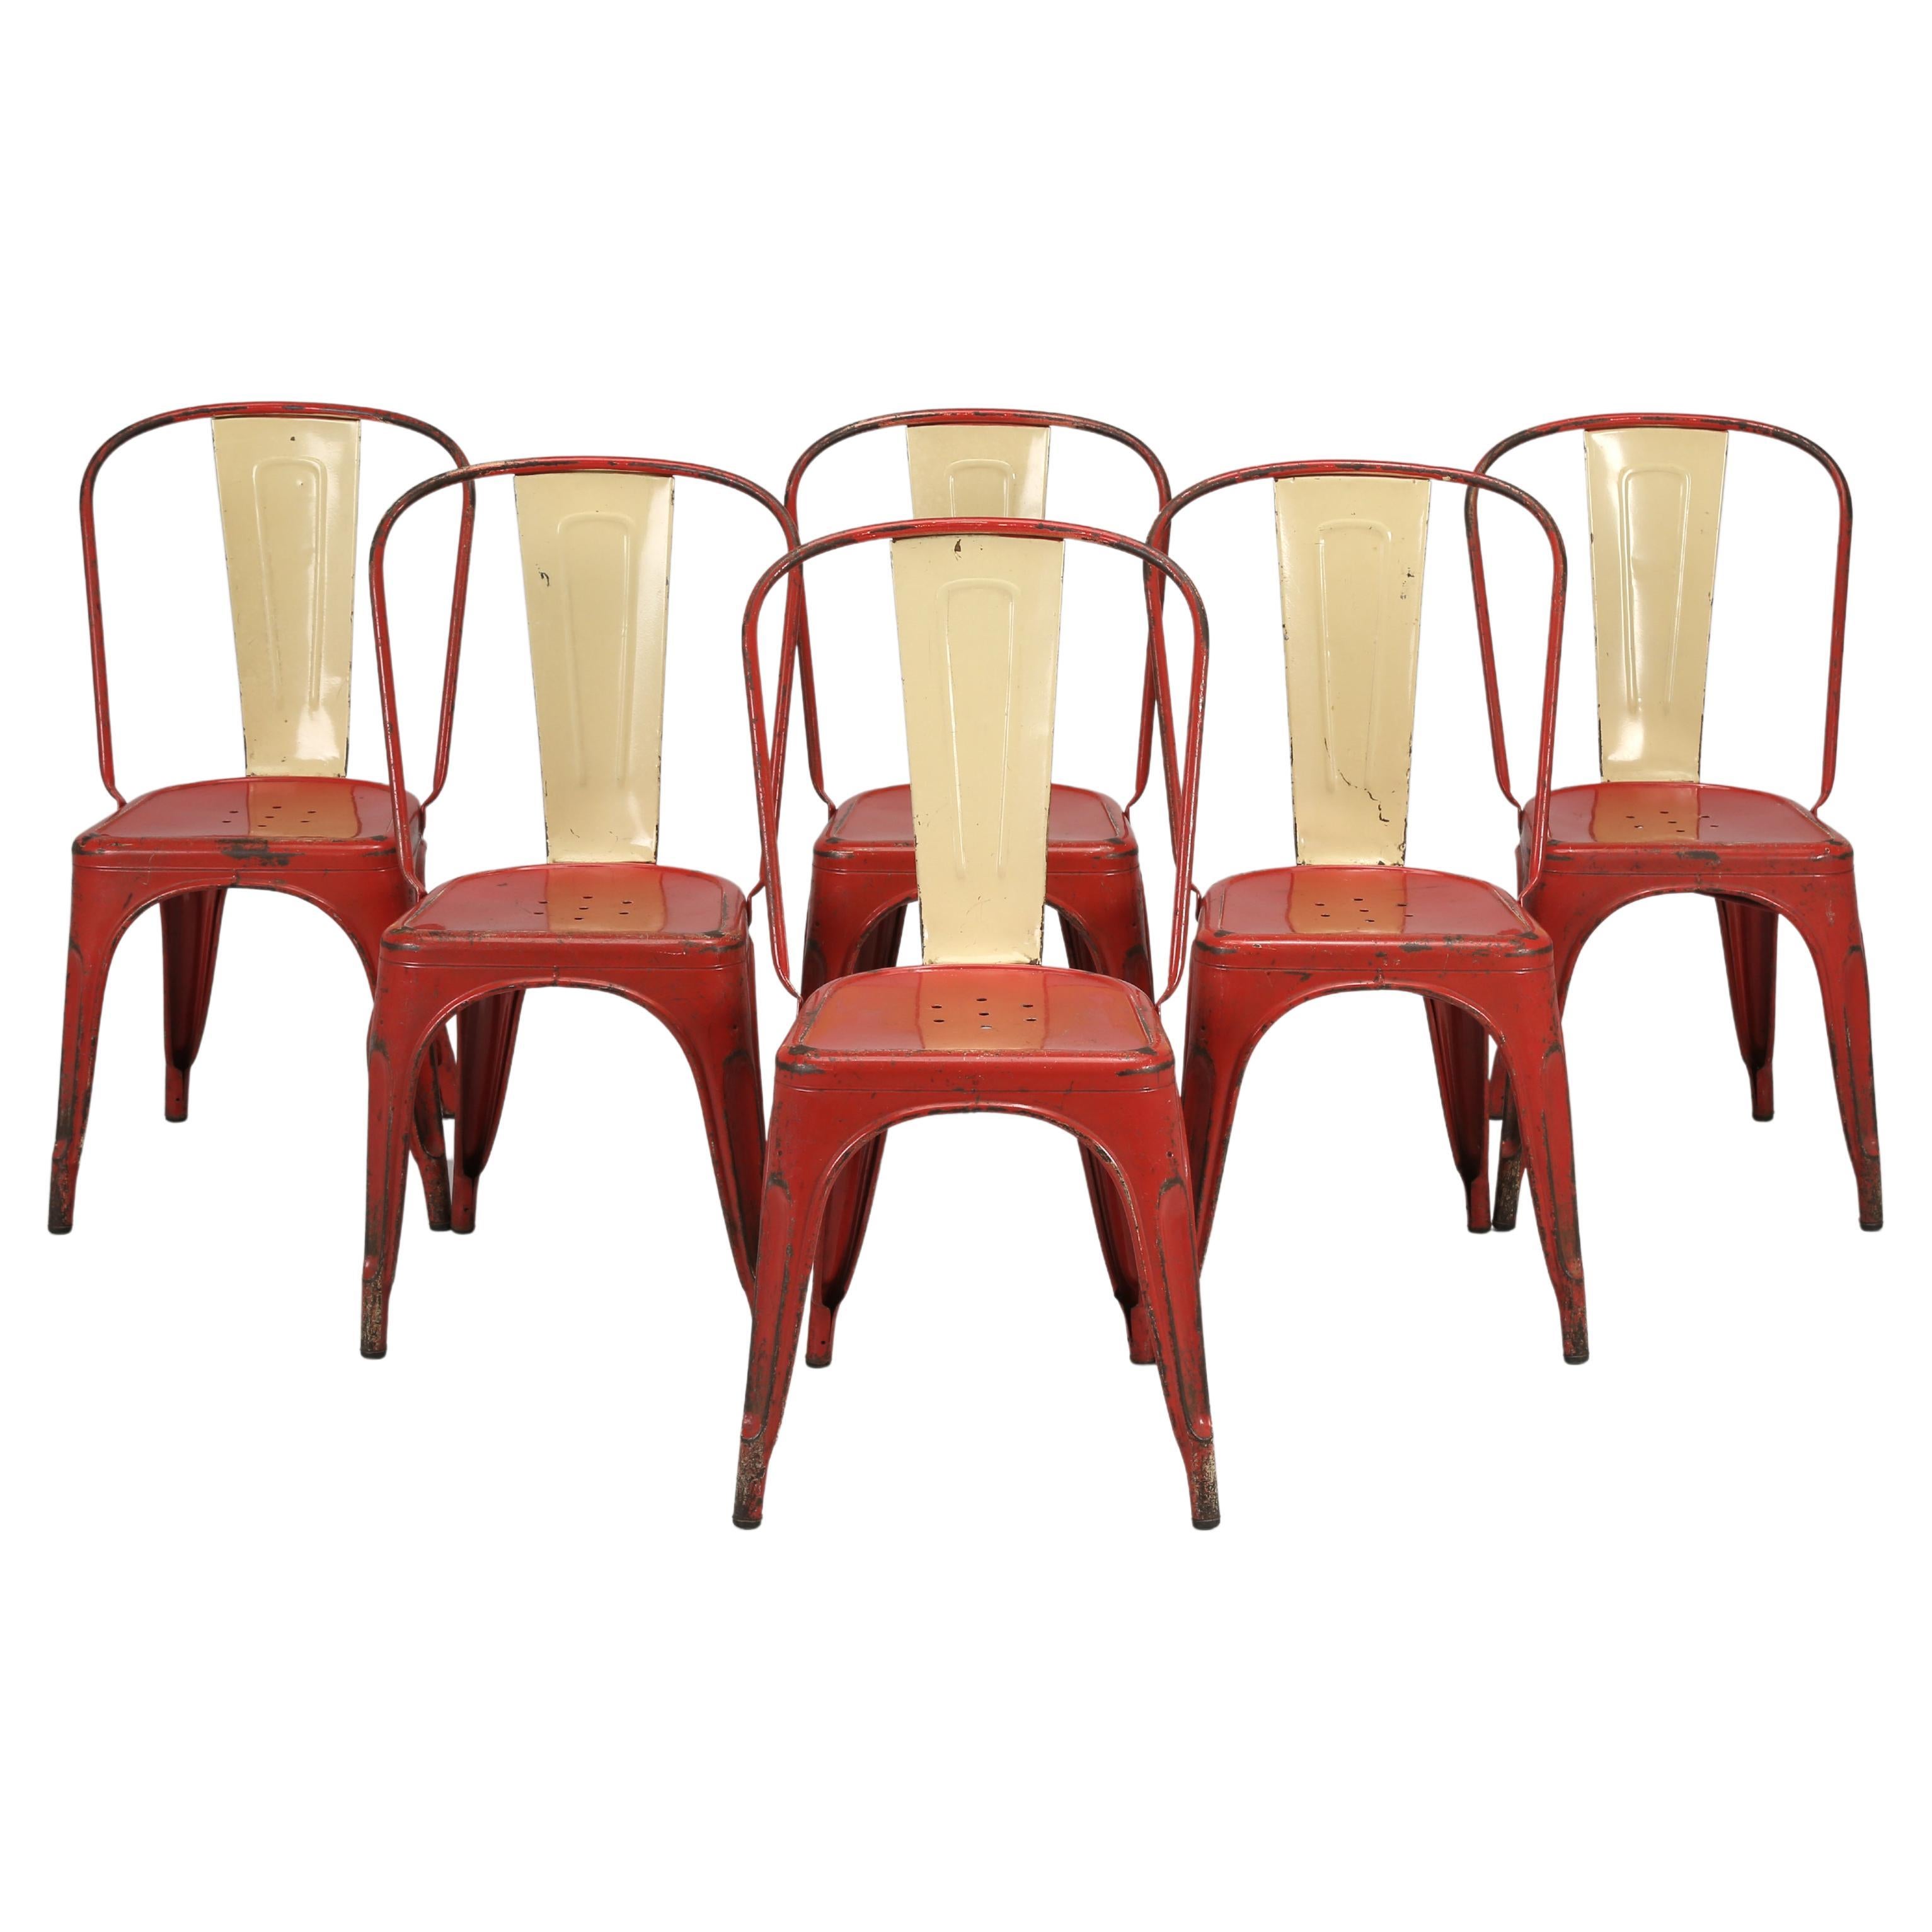 Tolix Stahlstühle Französisch ca. 1950er Jahre Originalfarbe '1500' Erhältlich sowohl neu als auch gebraucht